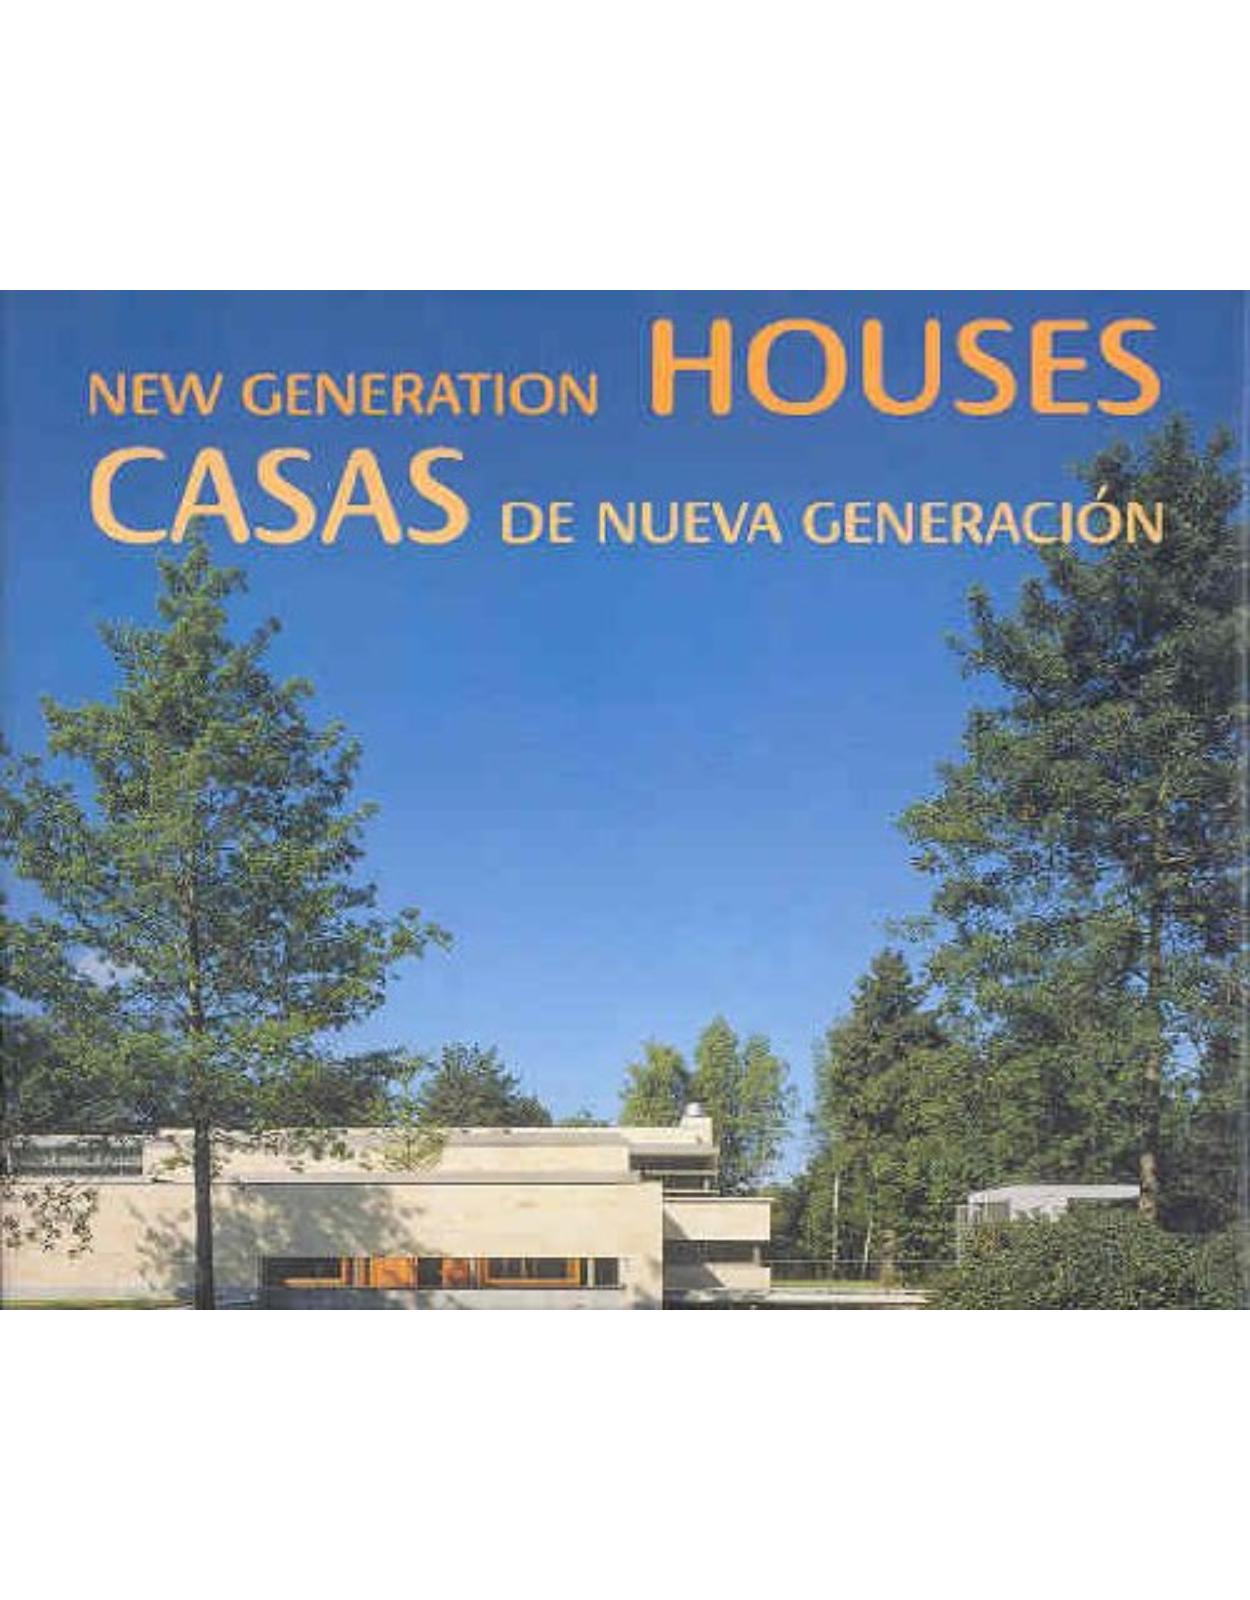 Casas de Nueva Generacion